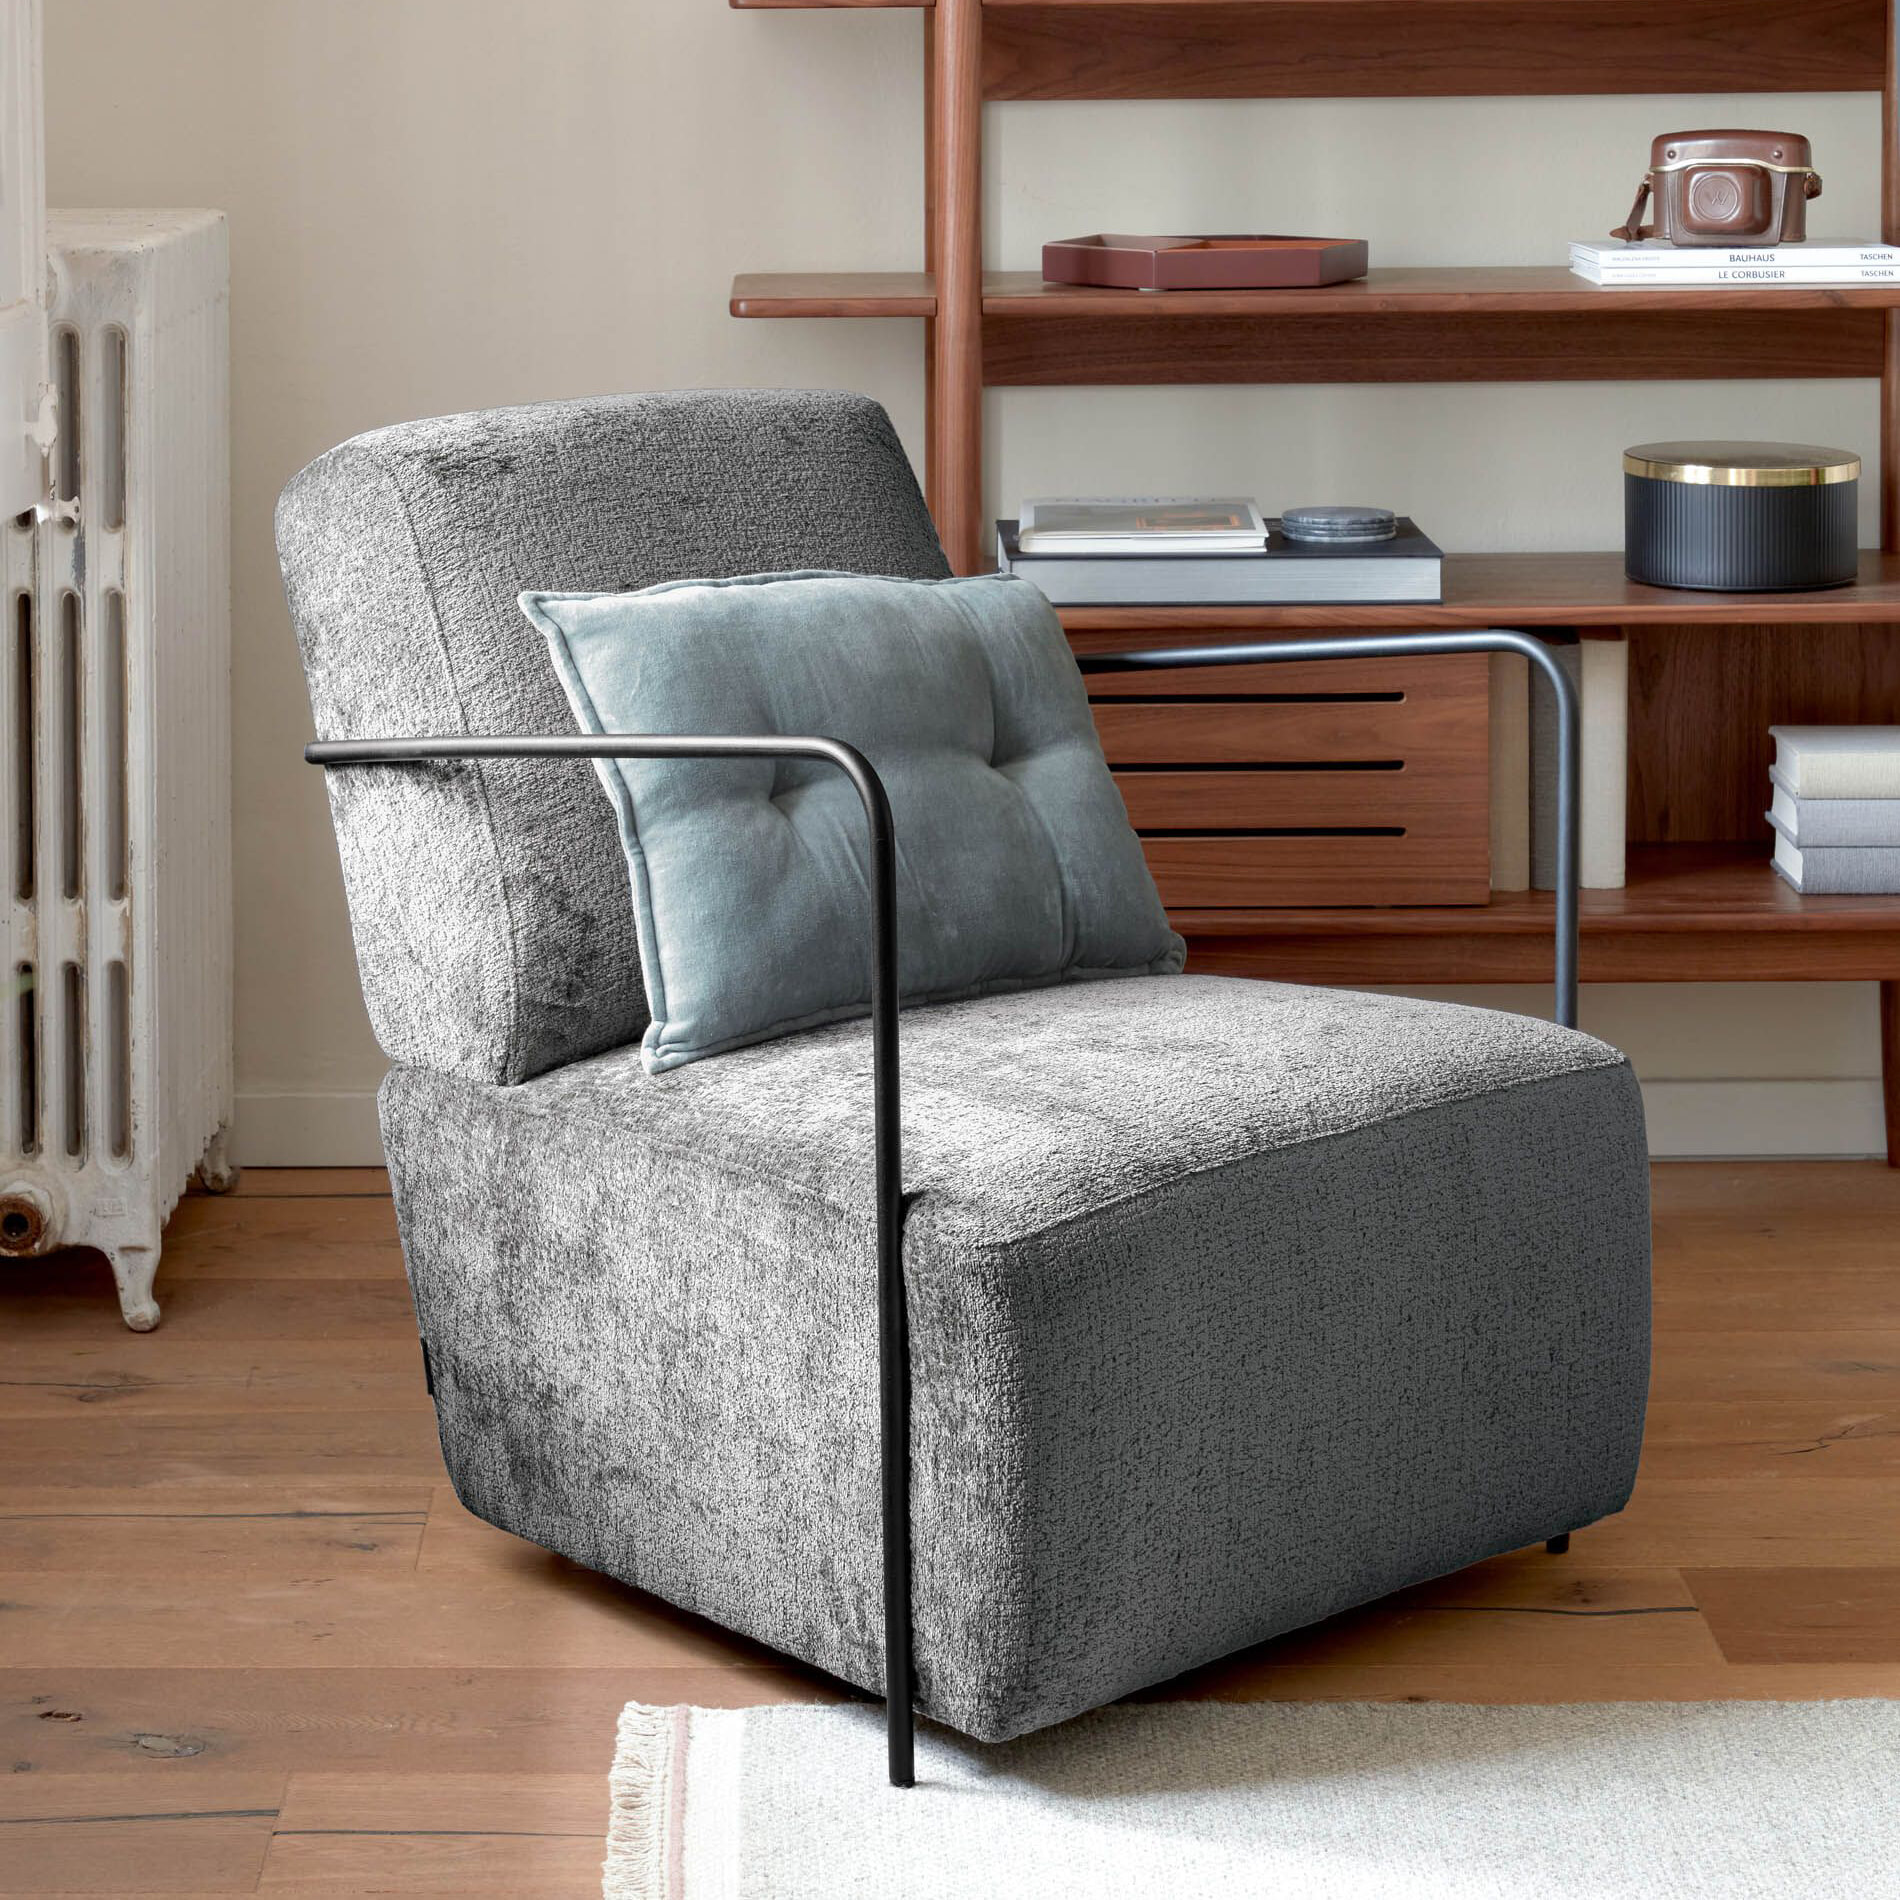 Kave Home - Gamer fauteuil in grijze chenille en metaal met zwarte afwerking